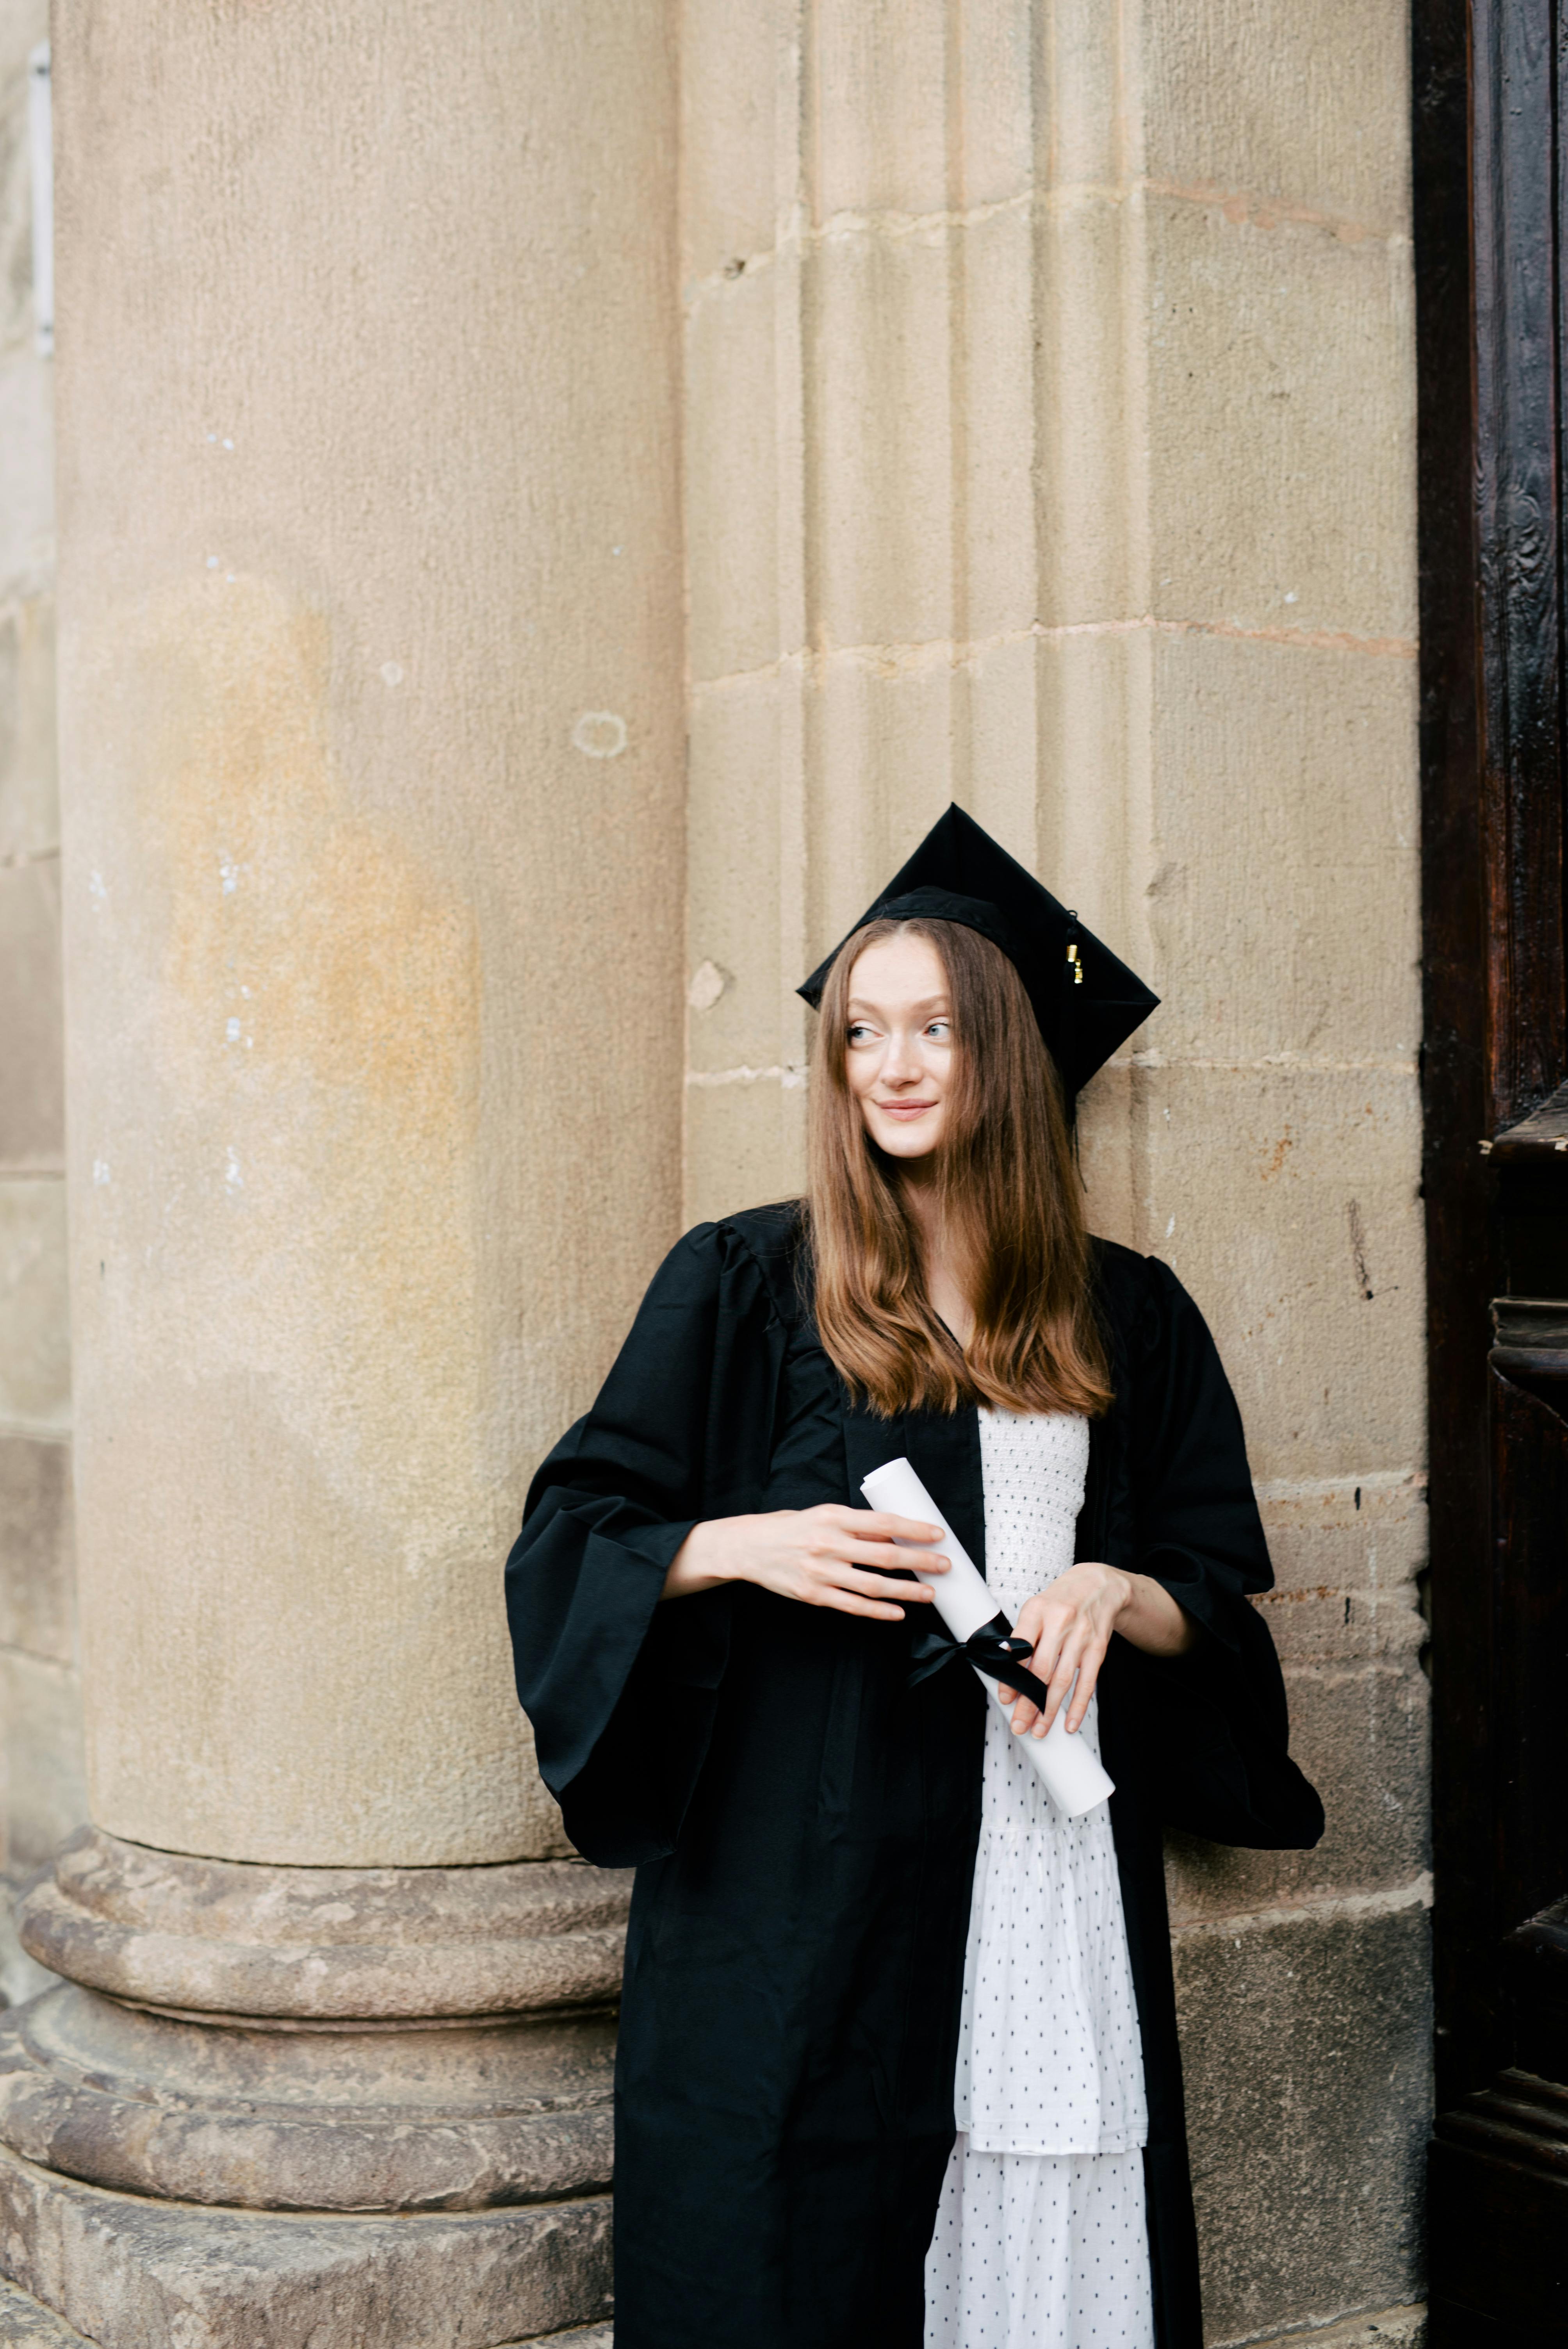 Buy Graduation Dresses, Graduation Hat & Gown - Convowear